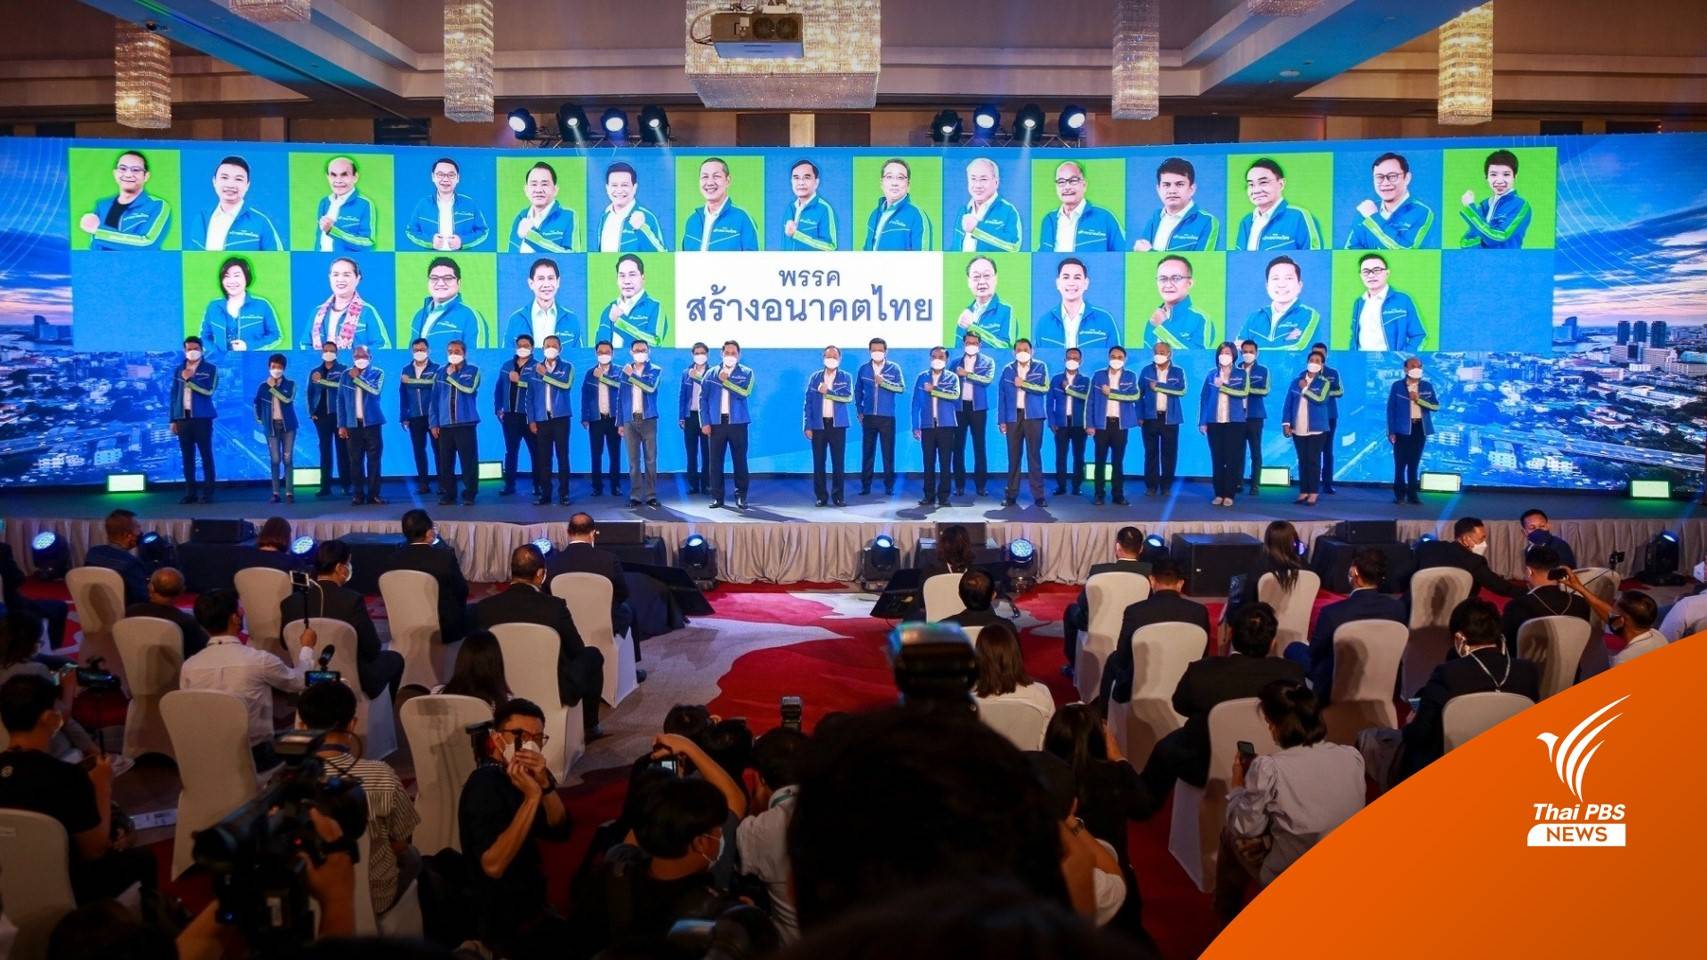 พรรคสร้างอนาคตไทย เปิดตัว "นักการเมือง-นักธุรกิจ" ร่วมงานพรึ่บ ยืนยันไม่ใช่พรรคอะไหล่ 